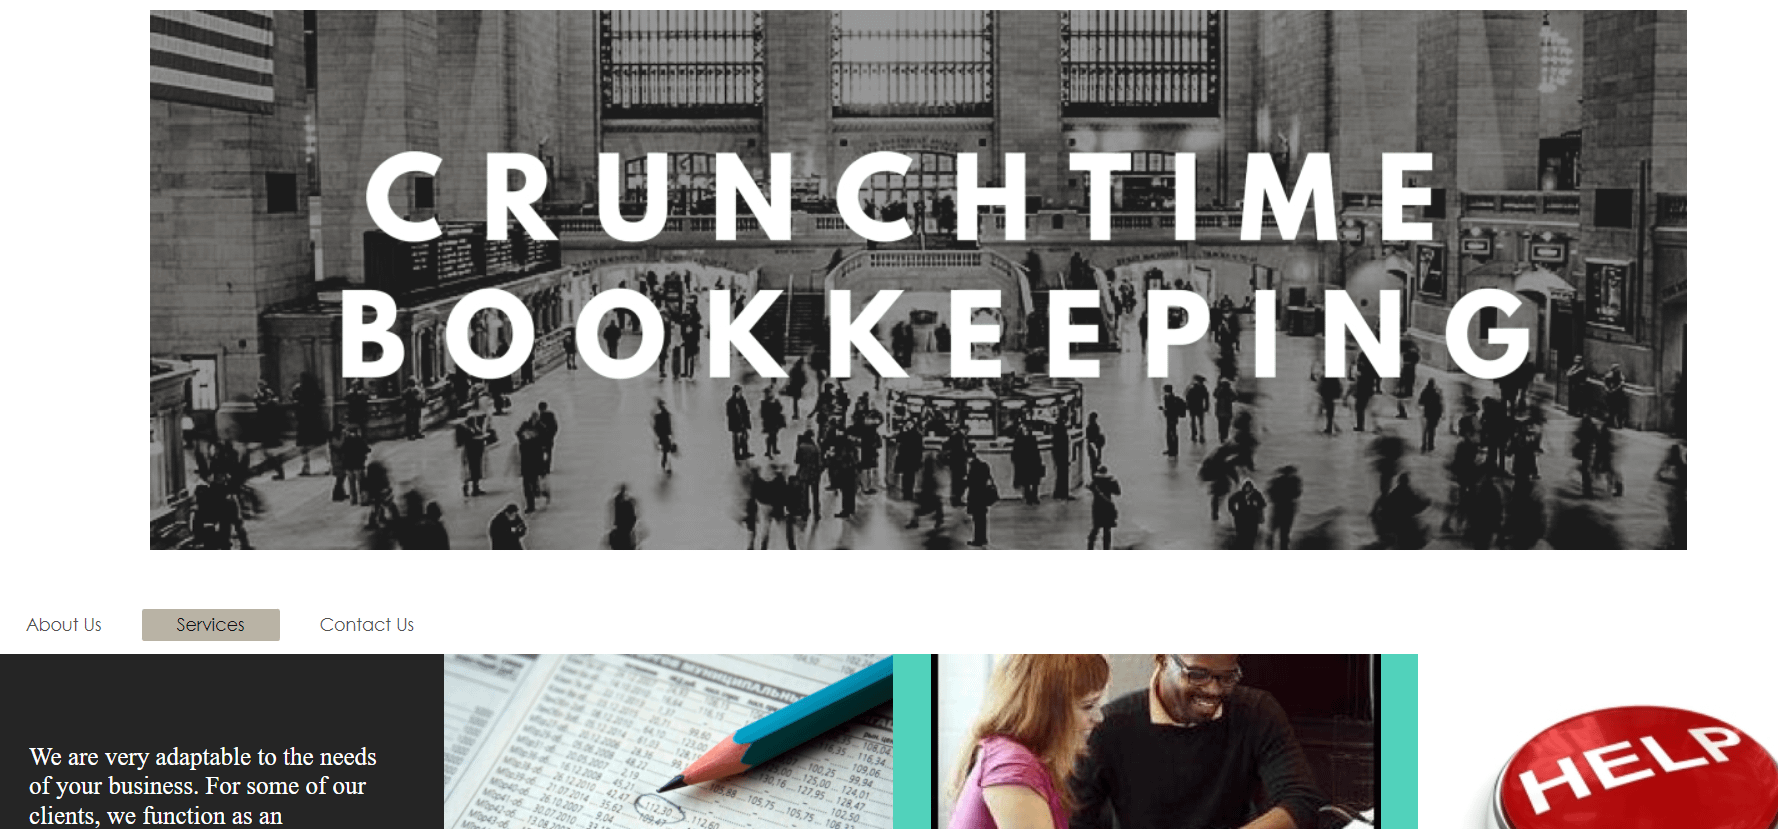 Bookkeper business names - Crunchtime Bookkeppeing